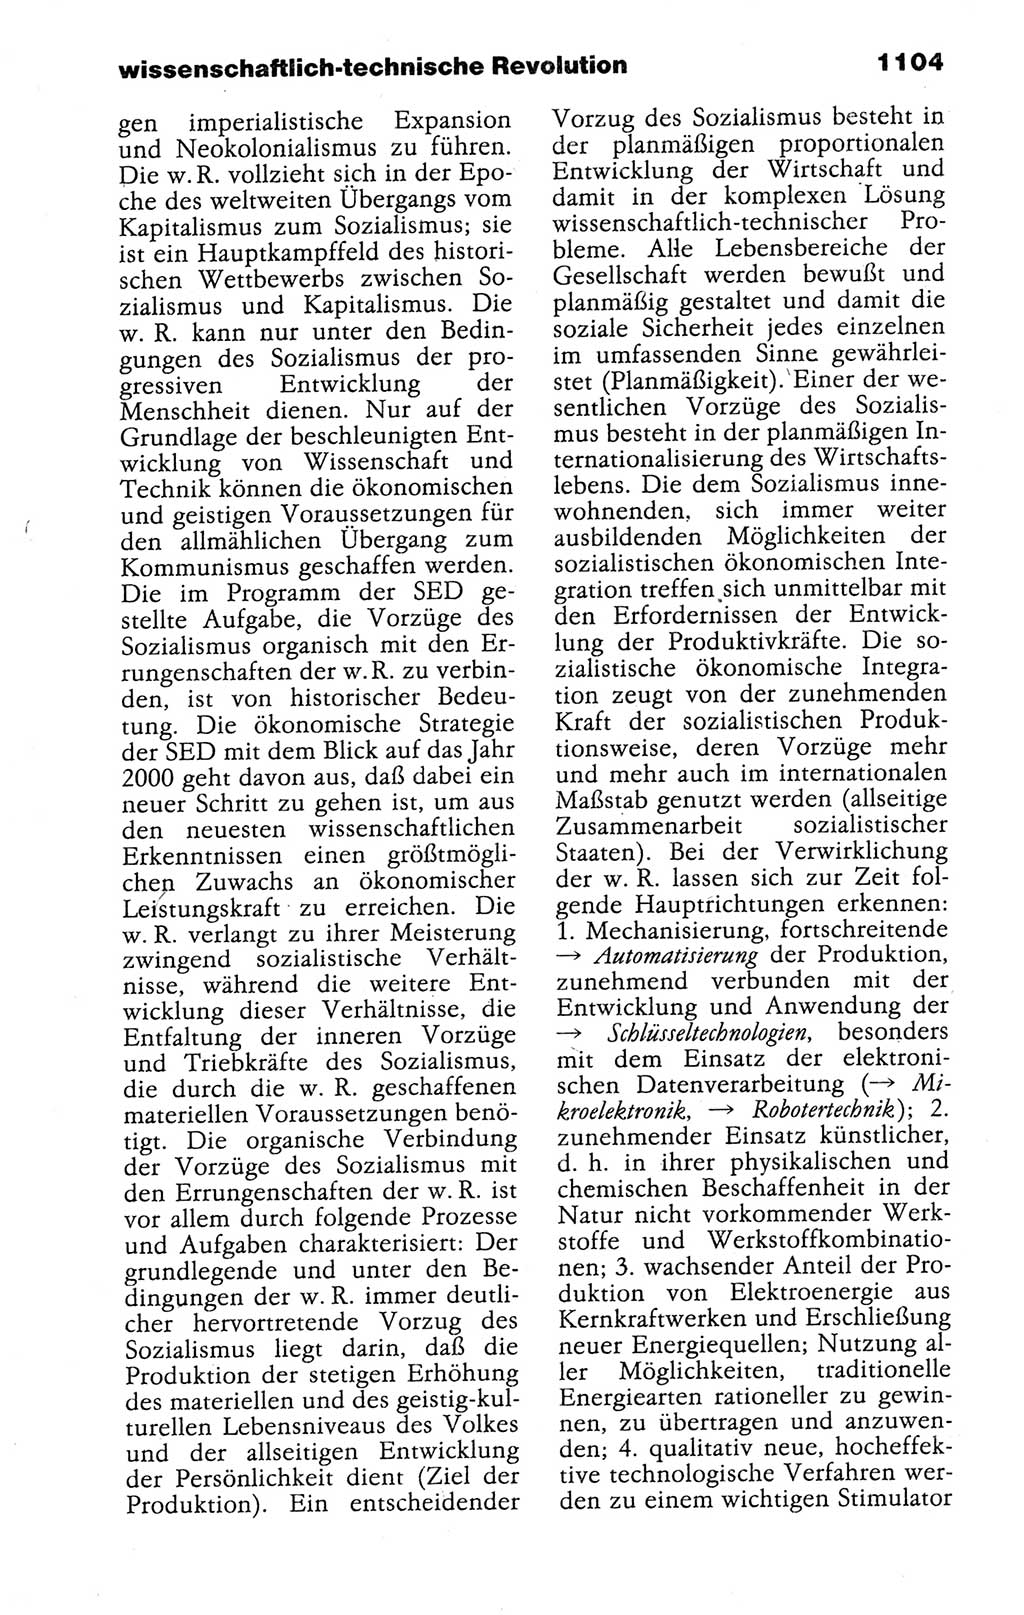 Kleines politisches Wörterbuch [Deutsche Demokratische Republik (DDR)] 1988, Seite 1104 (Kl. pol. Wb. DDR 1988, S. 1104)